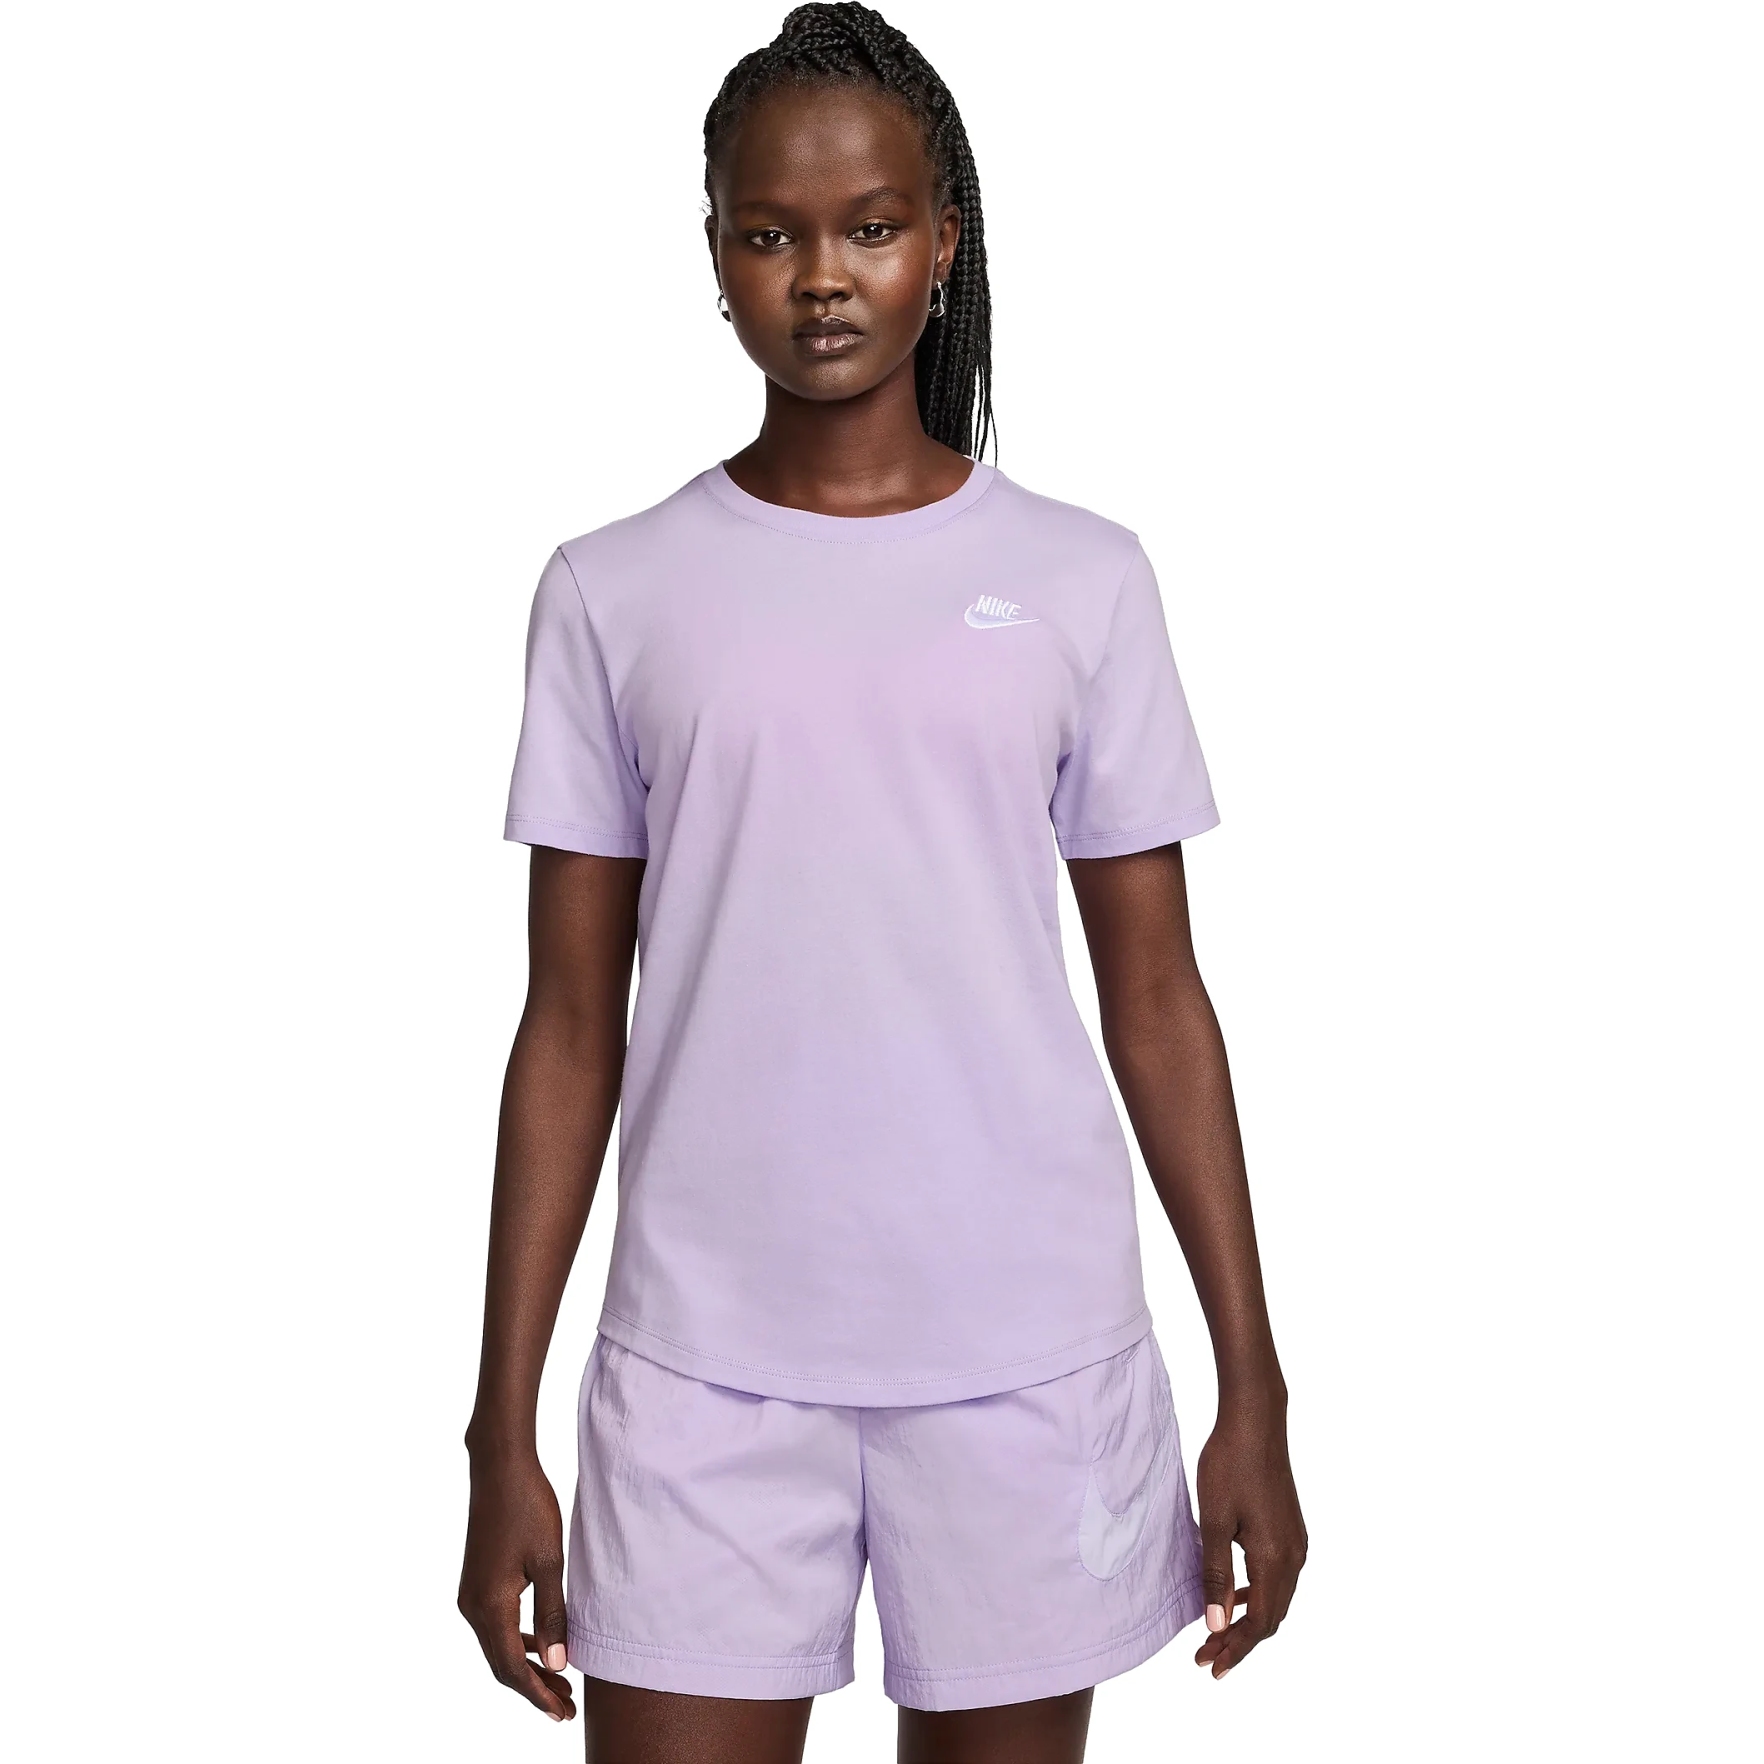 Produktbild von Nike Sportswear Club Essentials T-Shirt Damen - violet mist/white DX7902-511